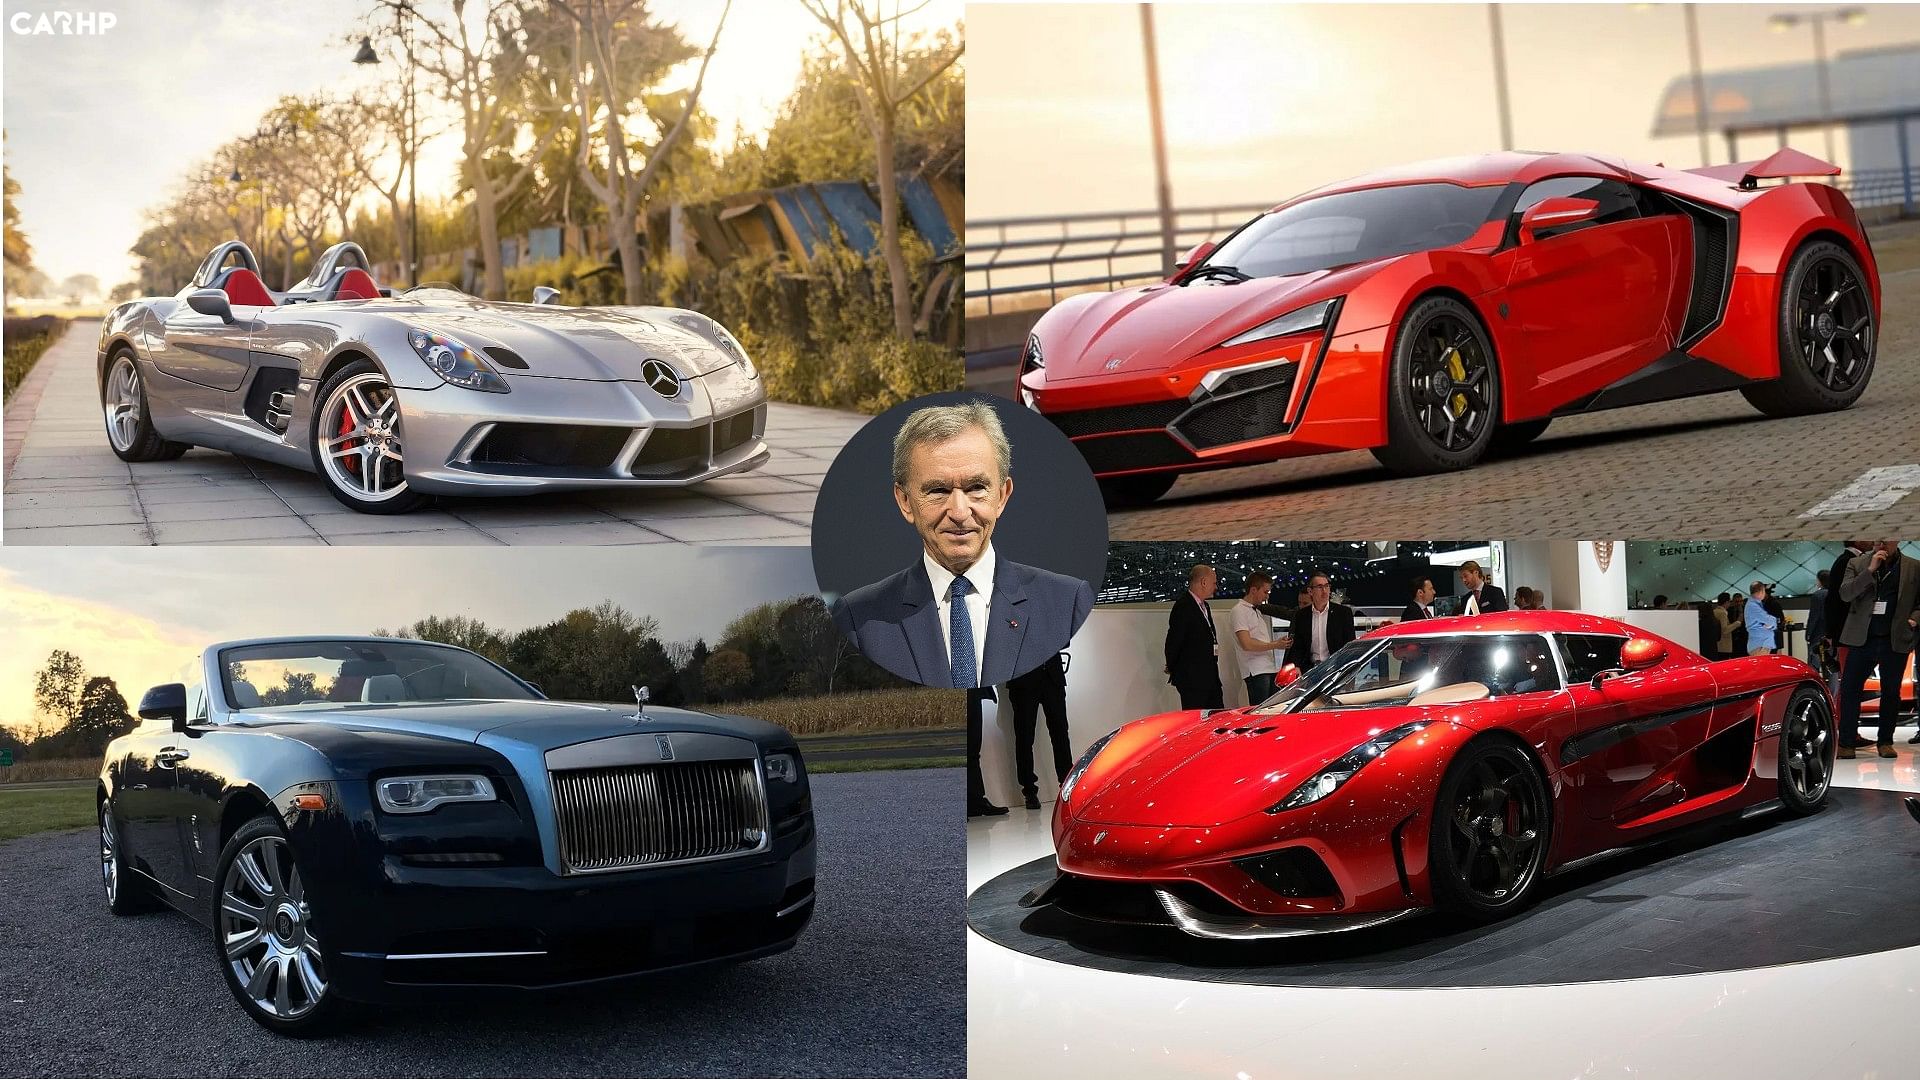 Bernard Arnault: A true collector of automobiles